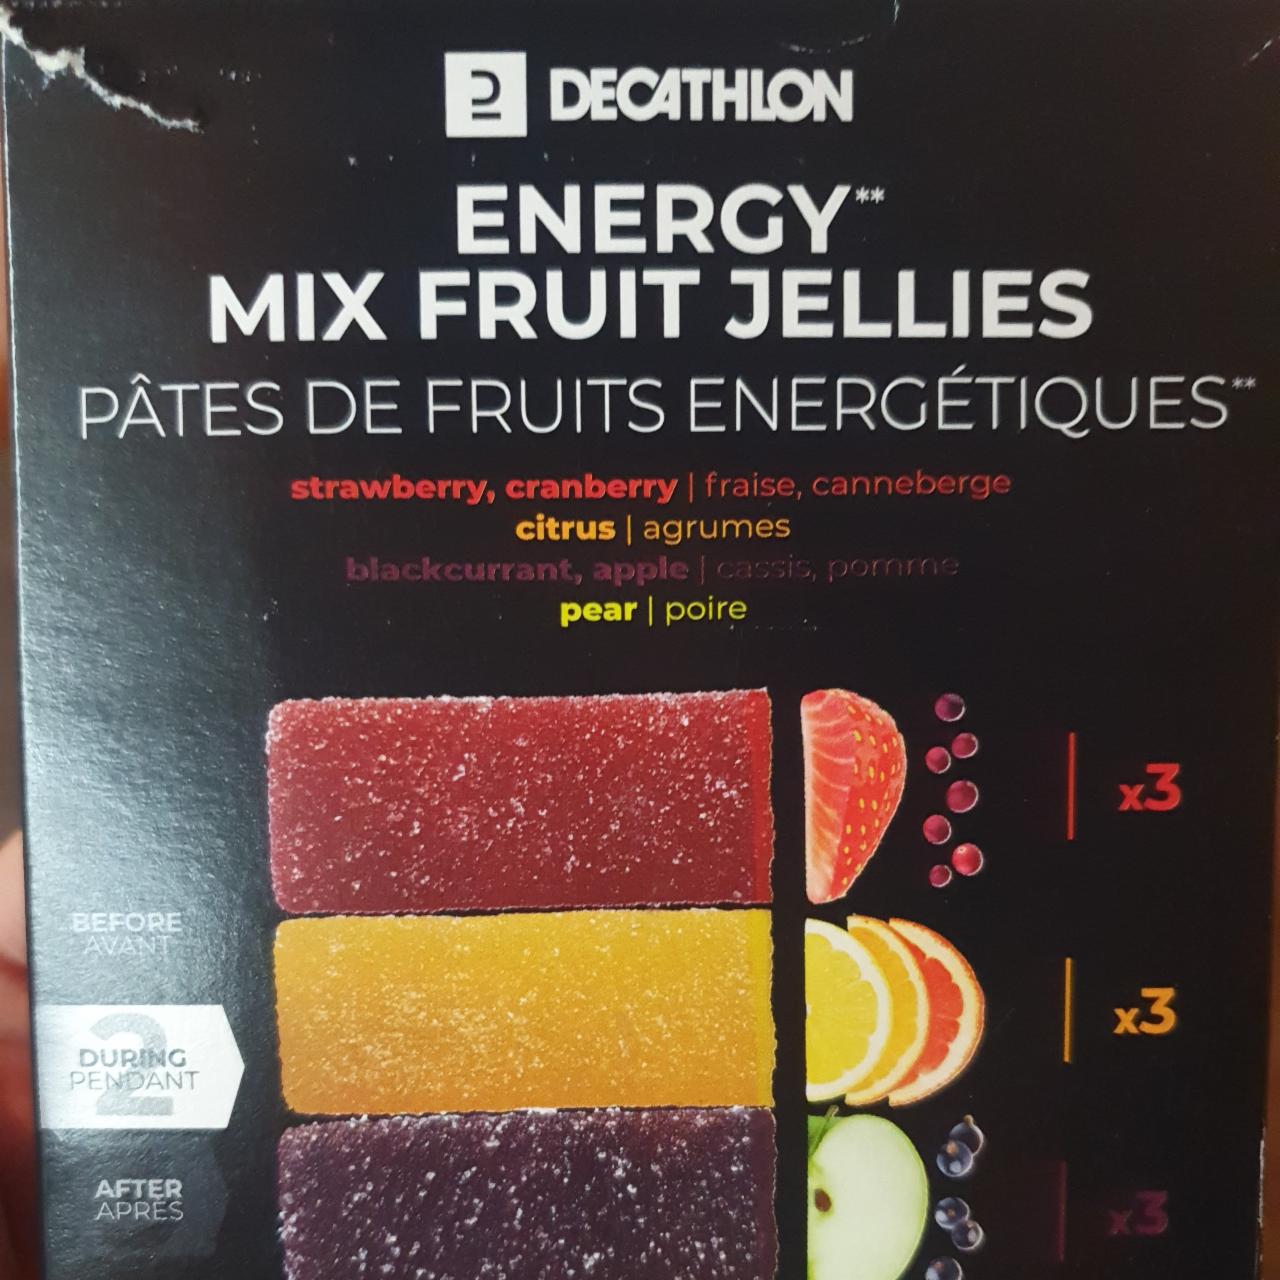 Zdjęcia - Energy mix fruit jellies Decathlon